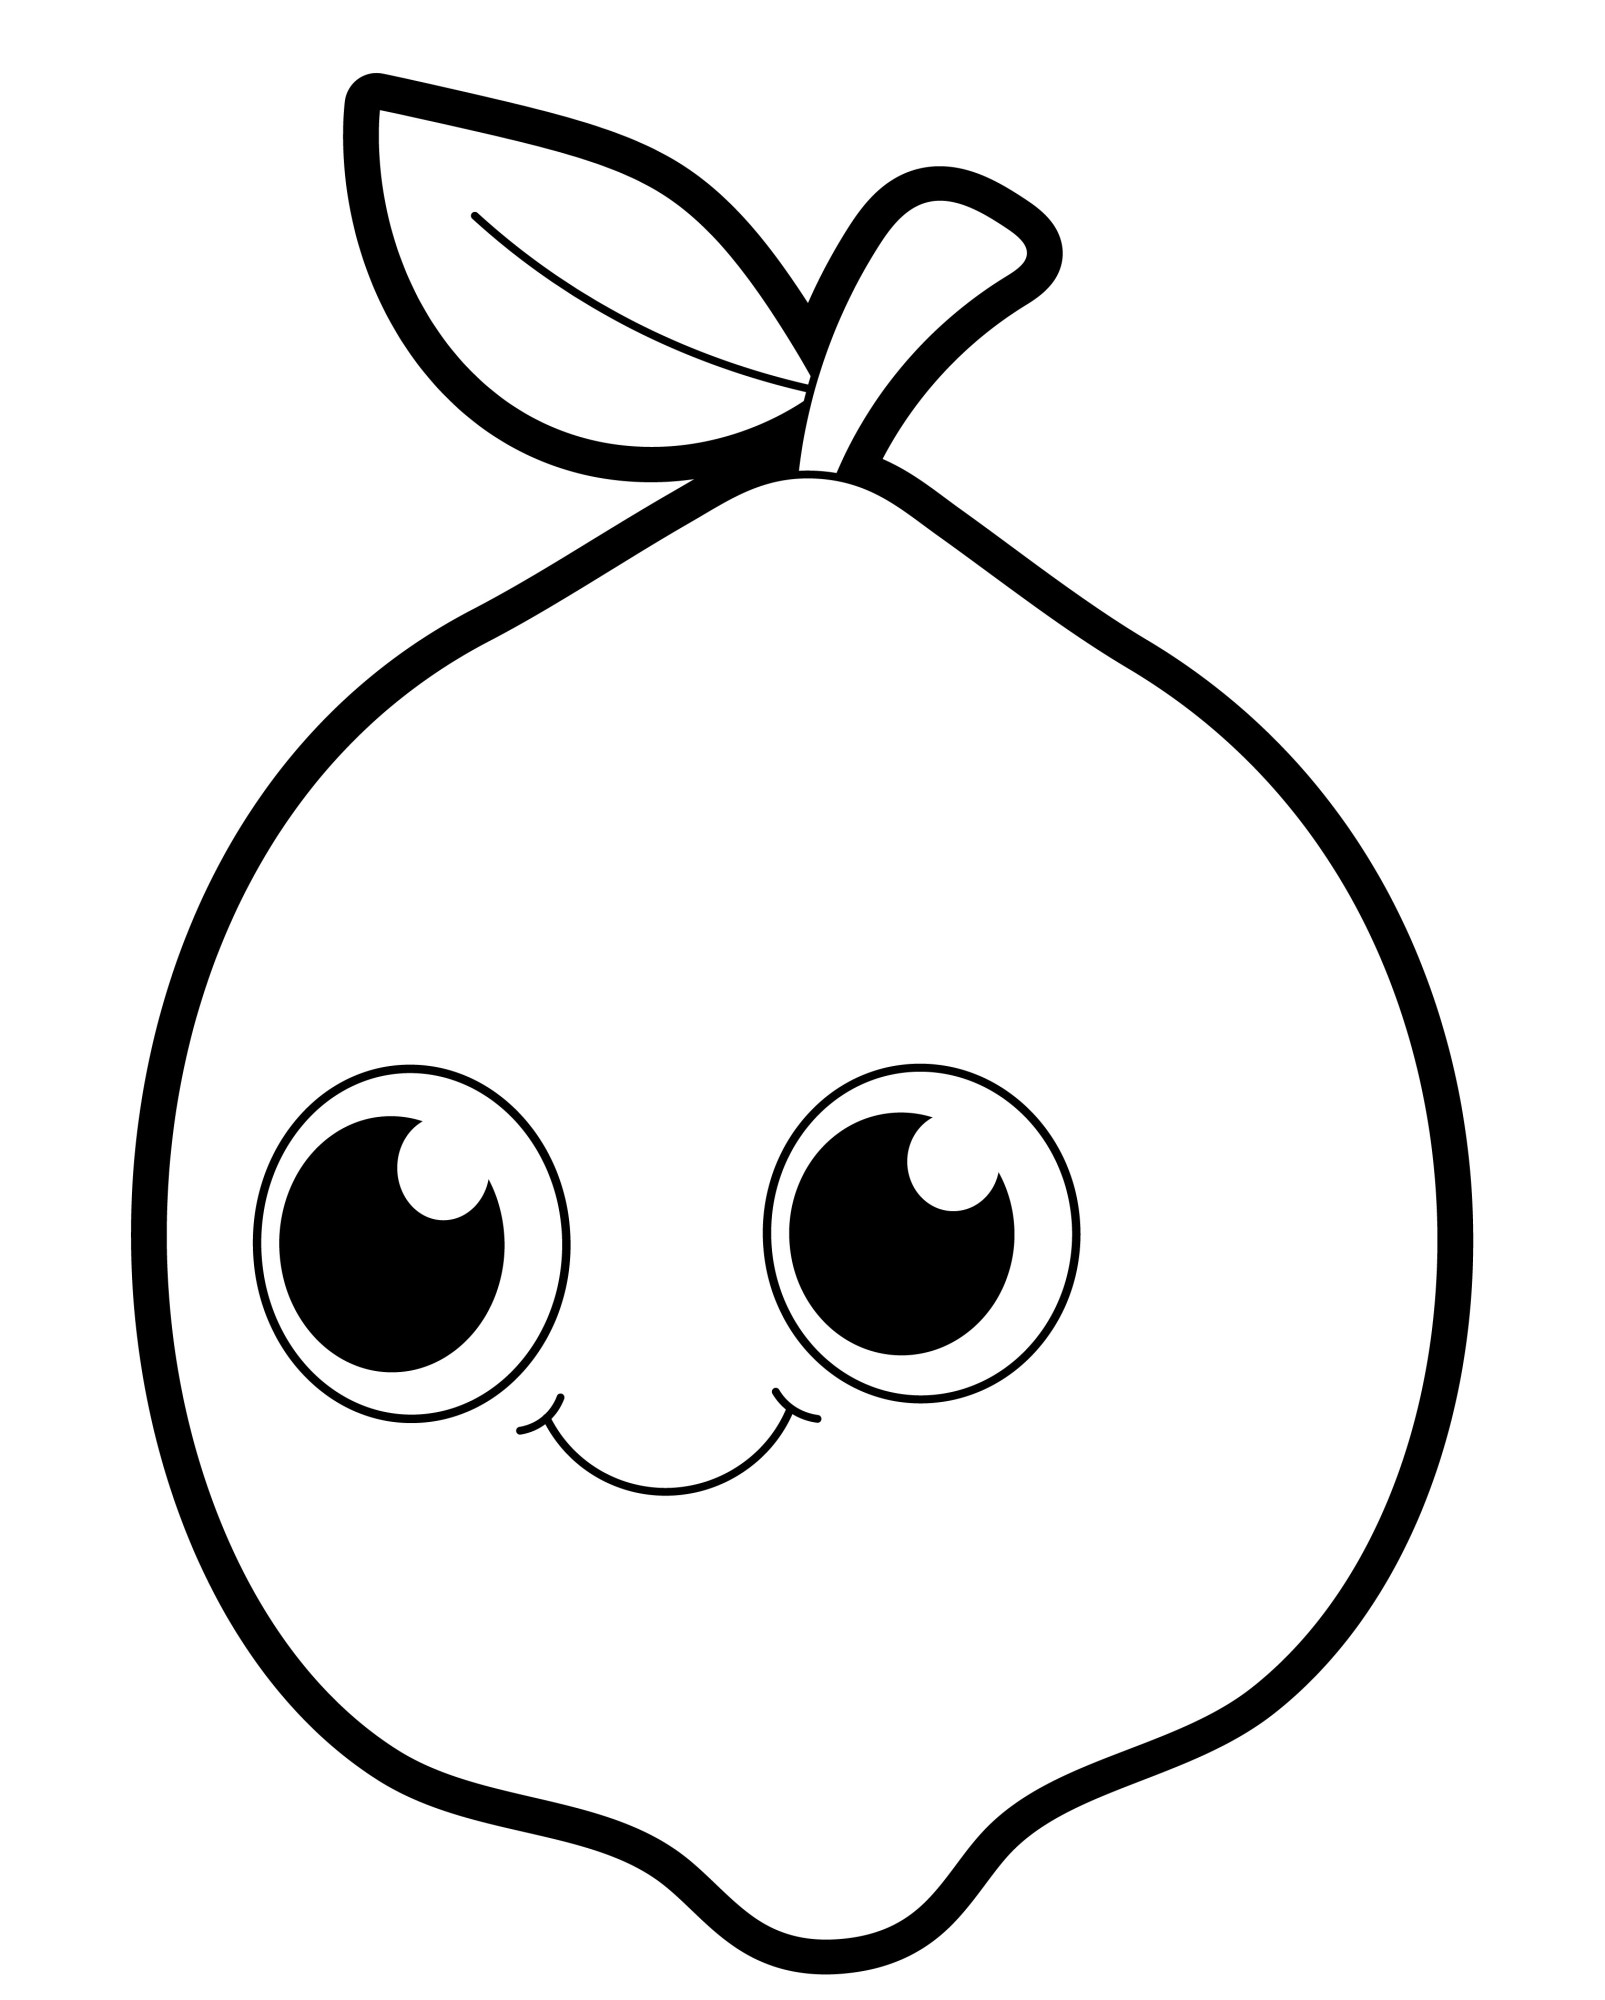 Раскраска для детей: лимон с большими глазами